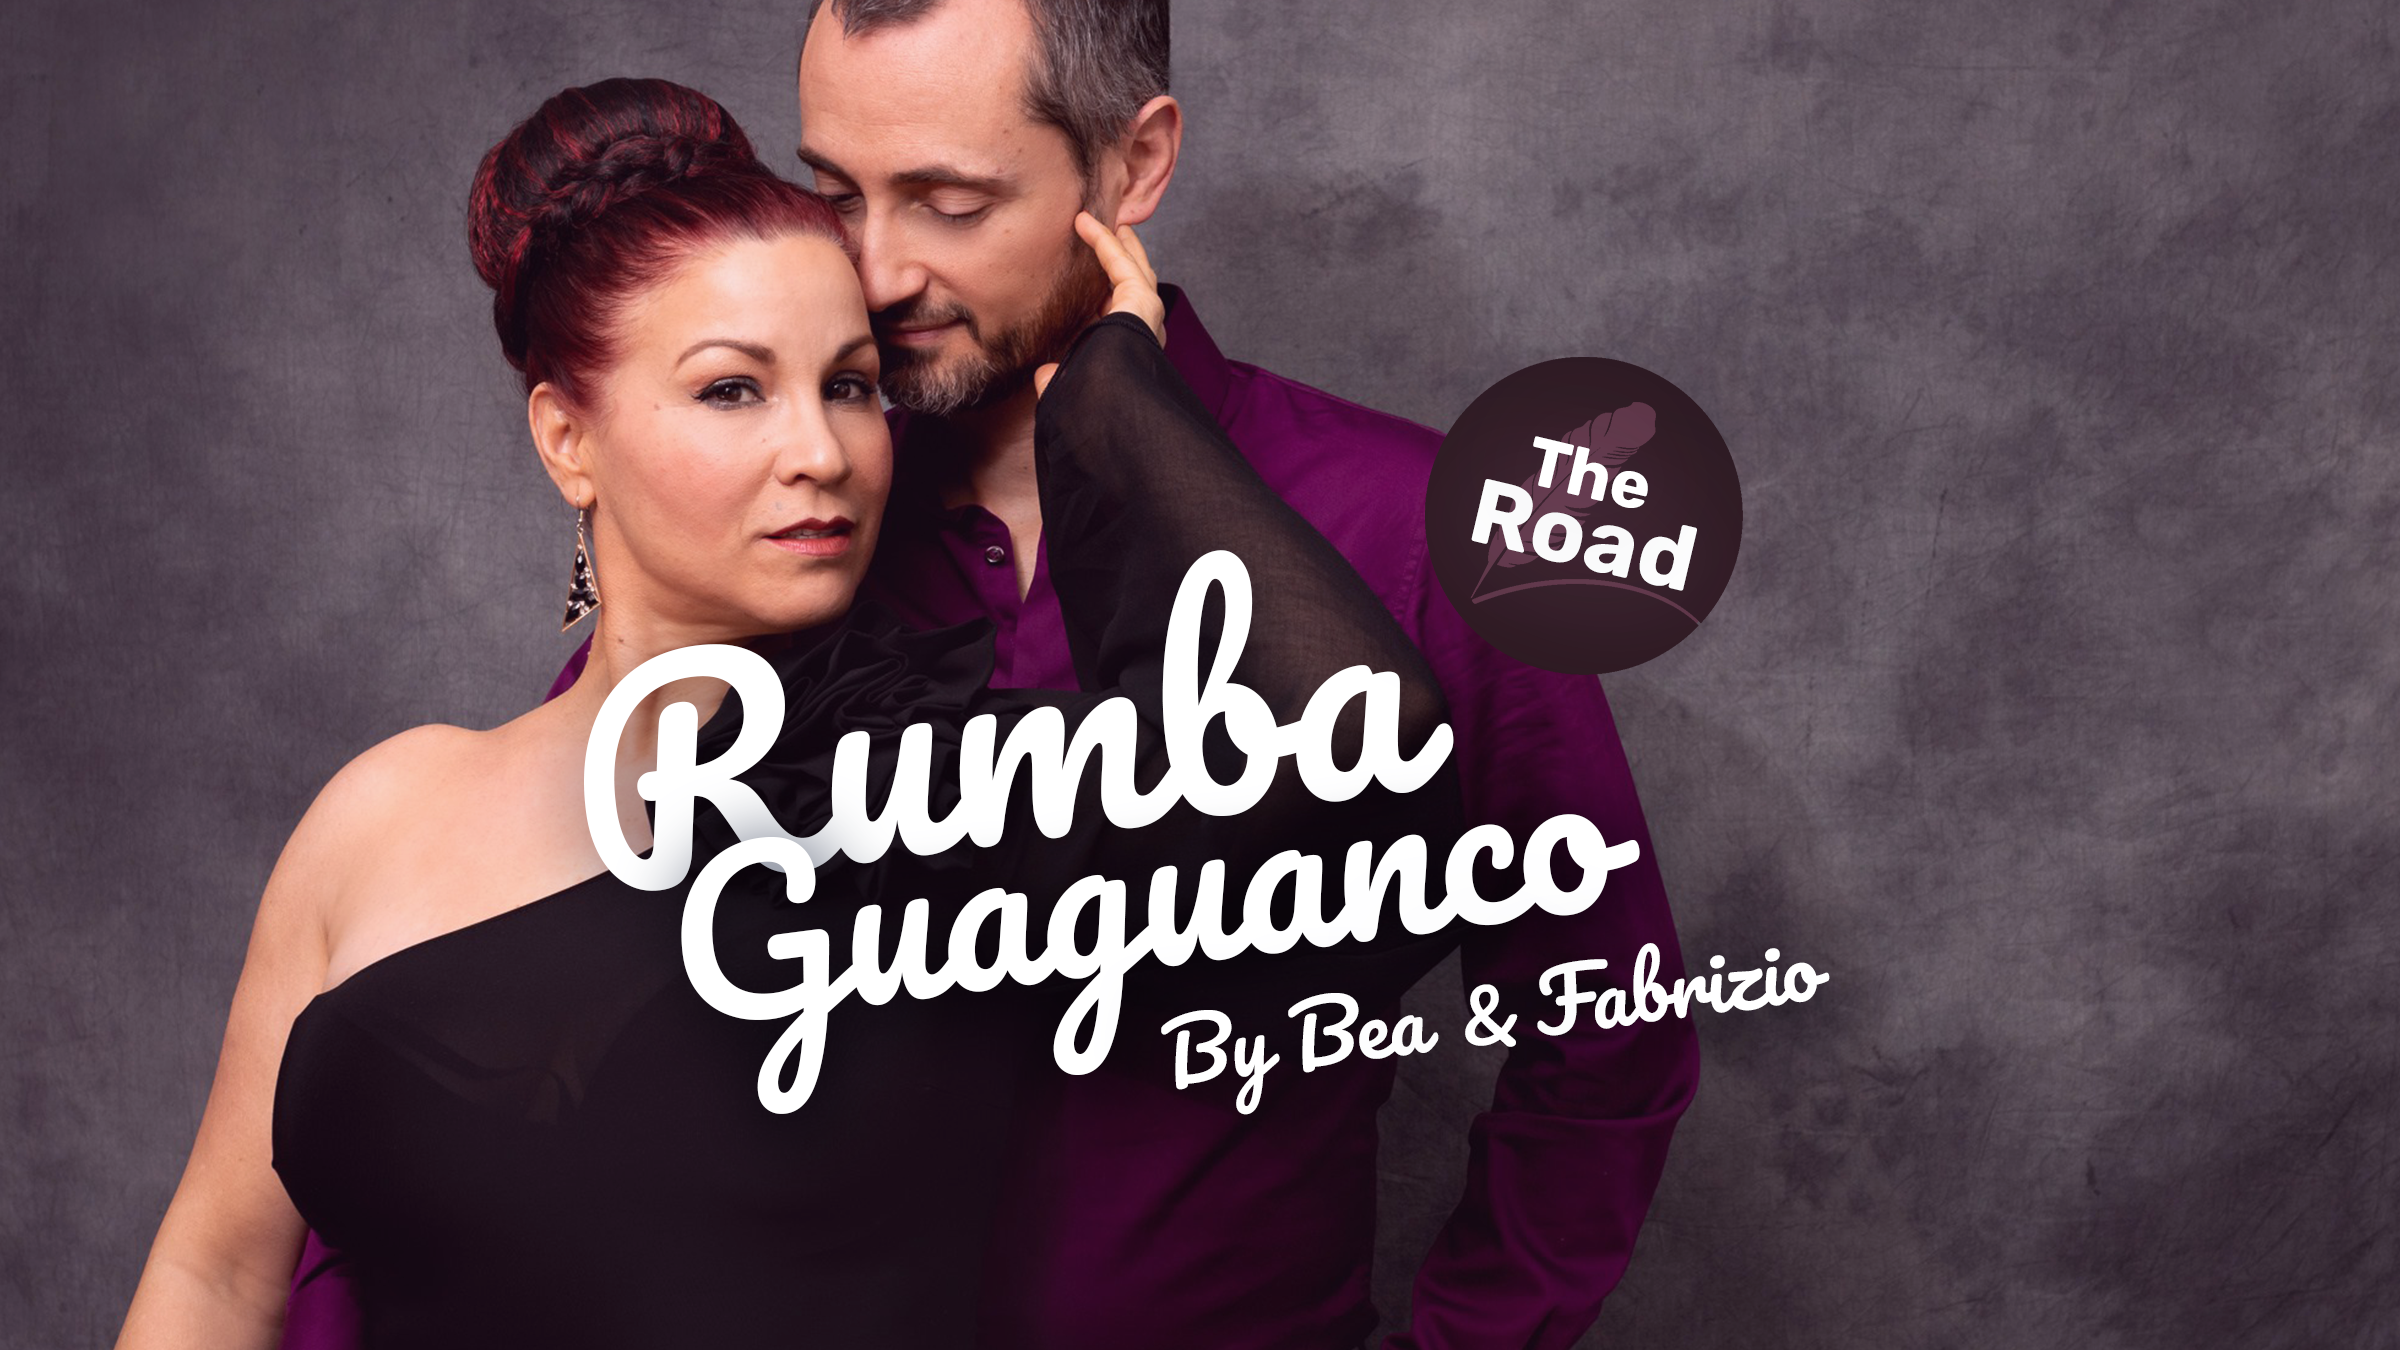 Workshop Rumba Guaguanco door Bea & Fabrizio